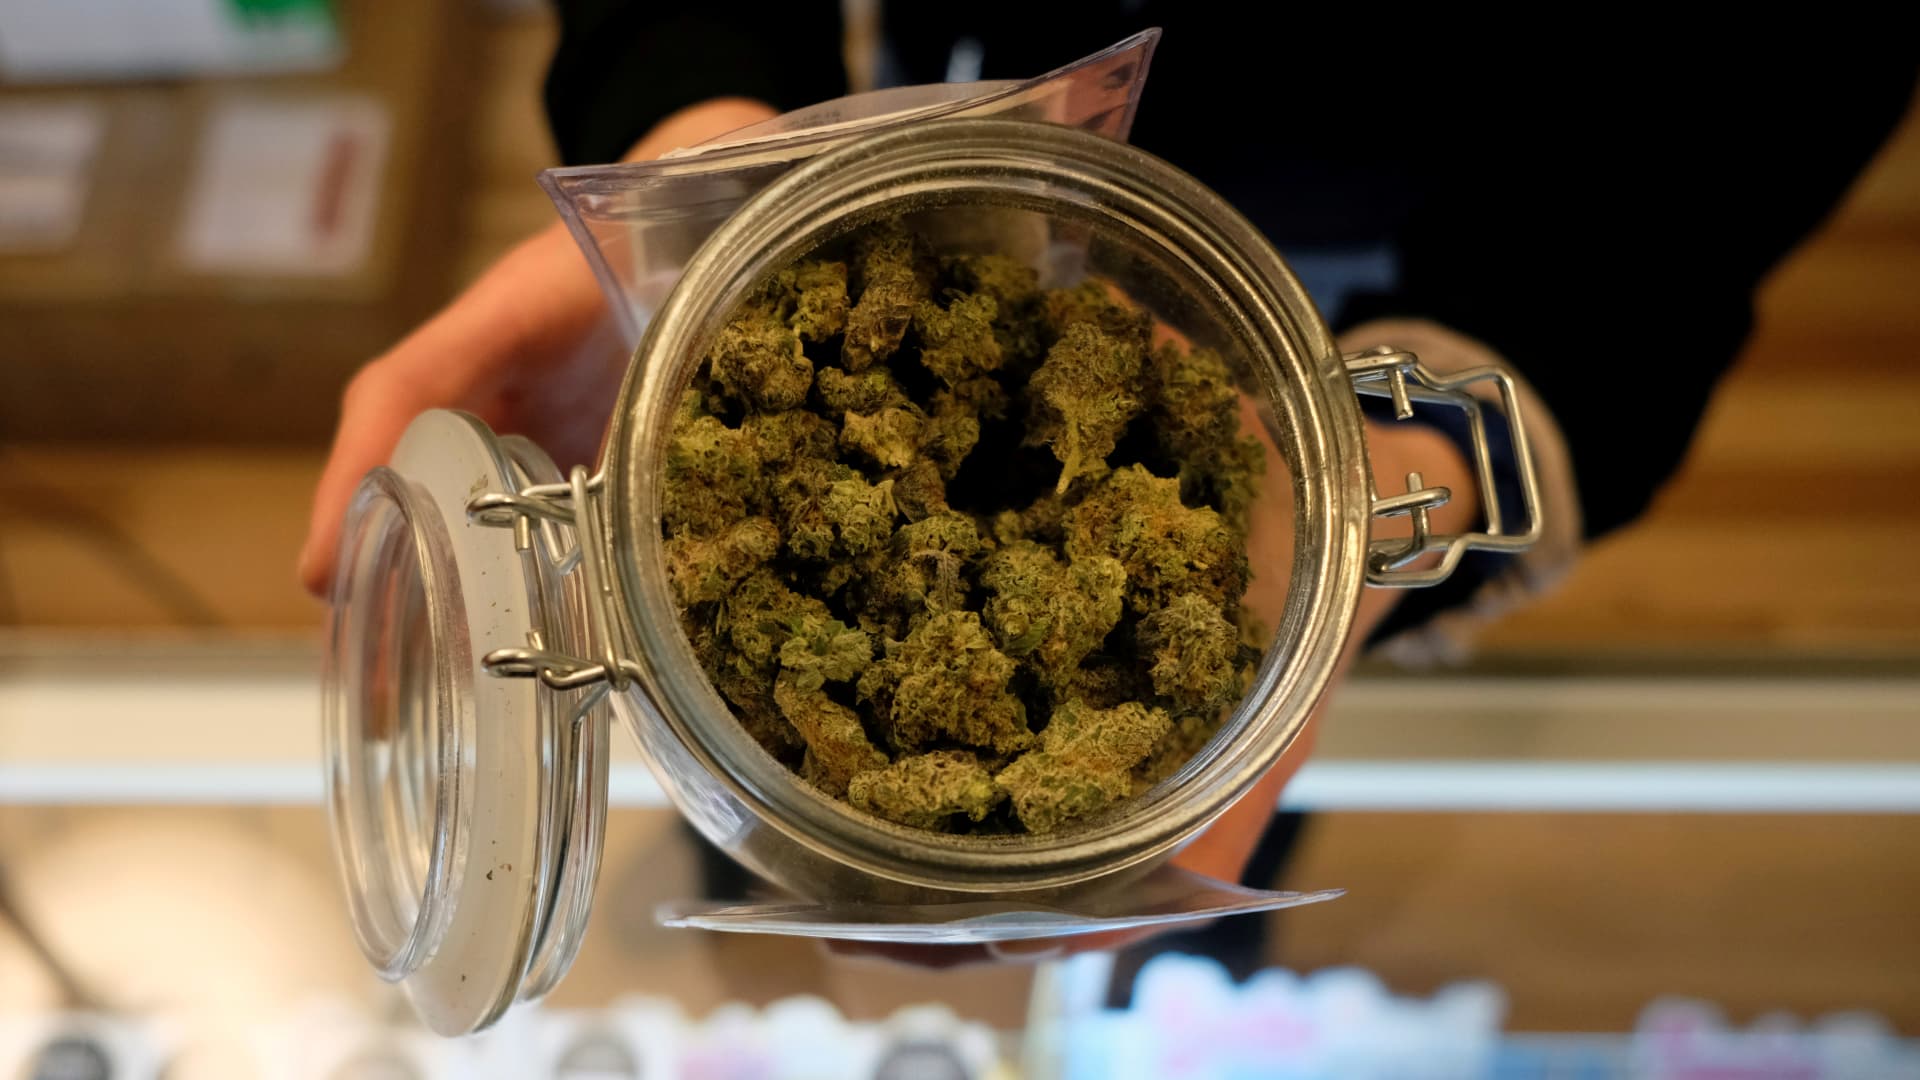 Cannabis reform: Senators say they will push pot bill in 2021